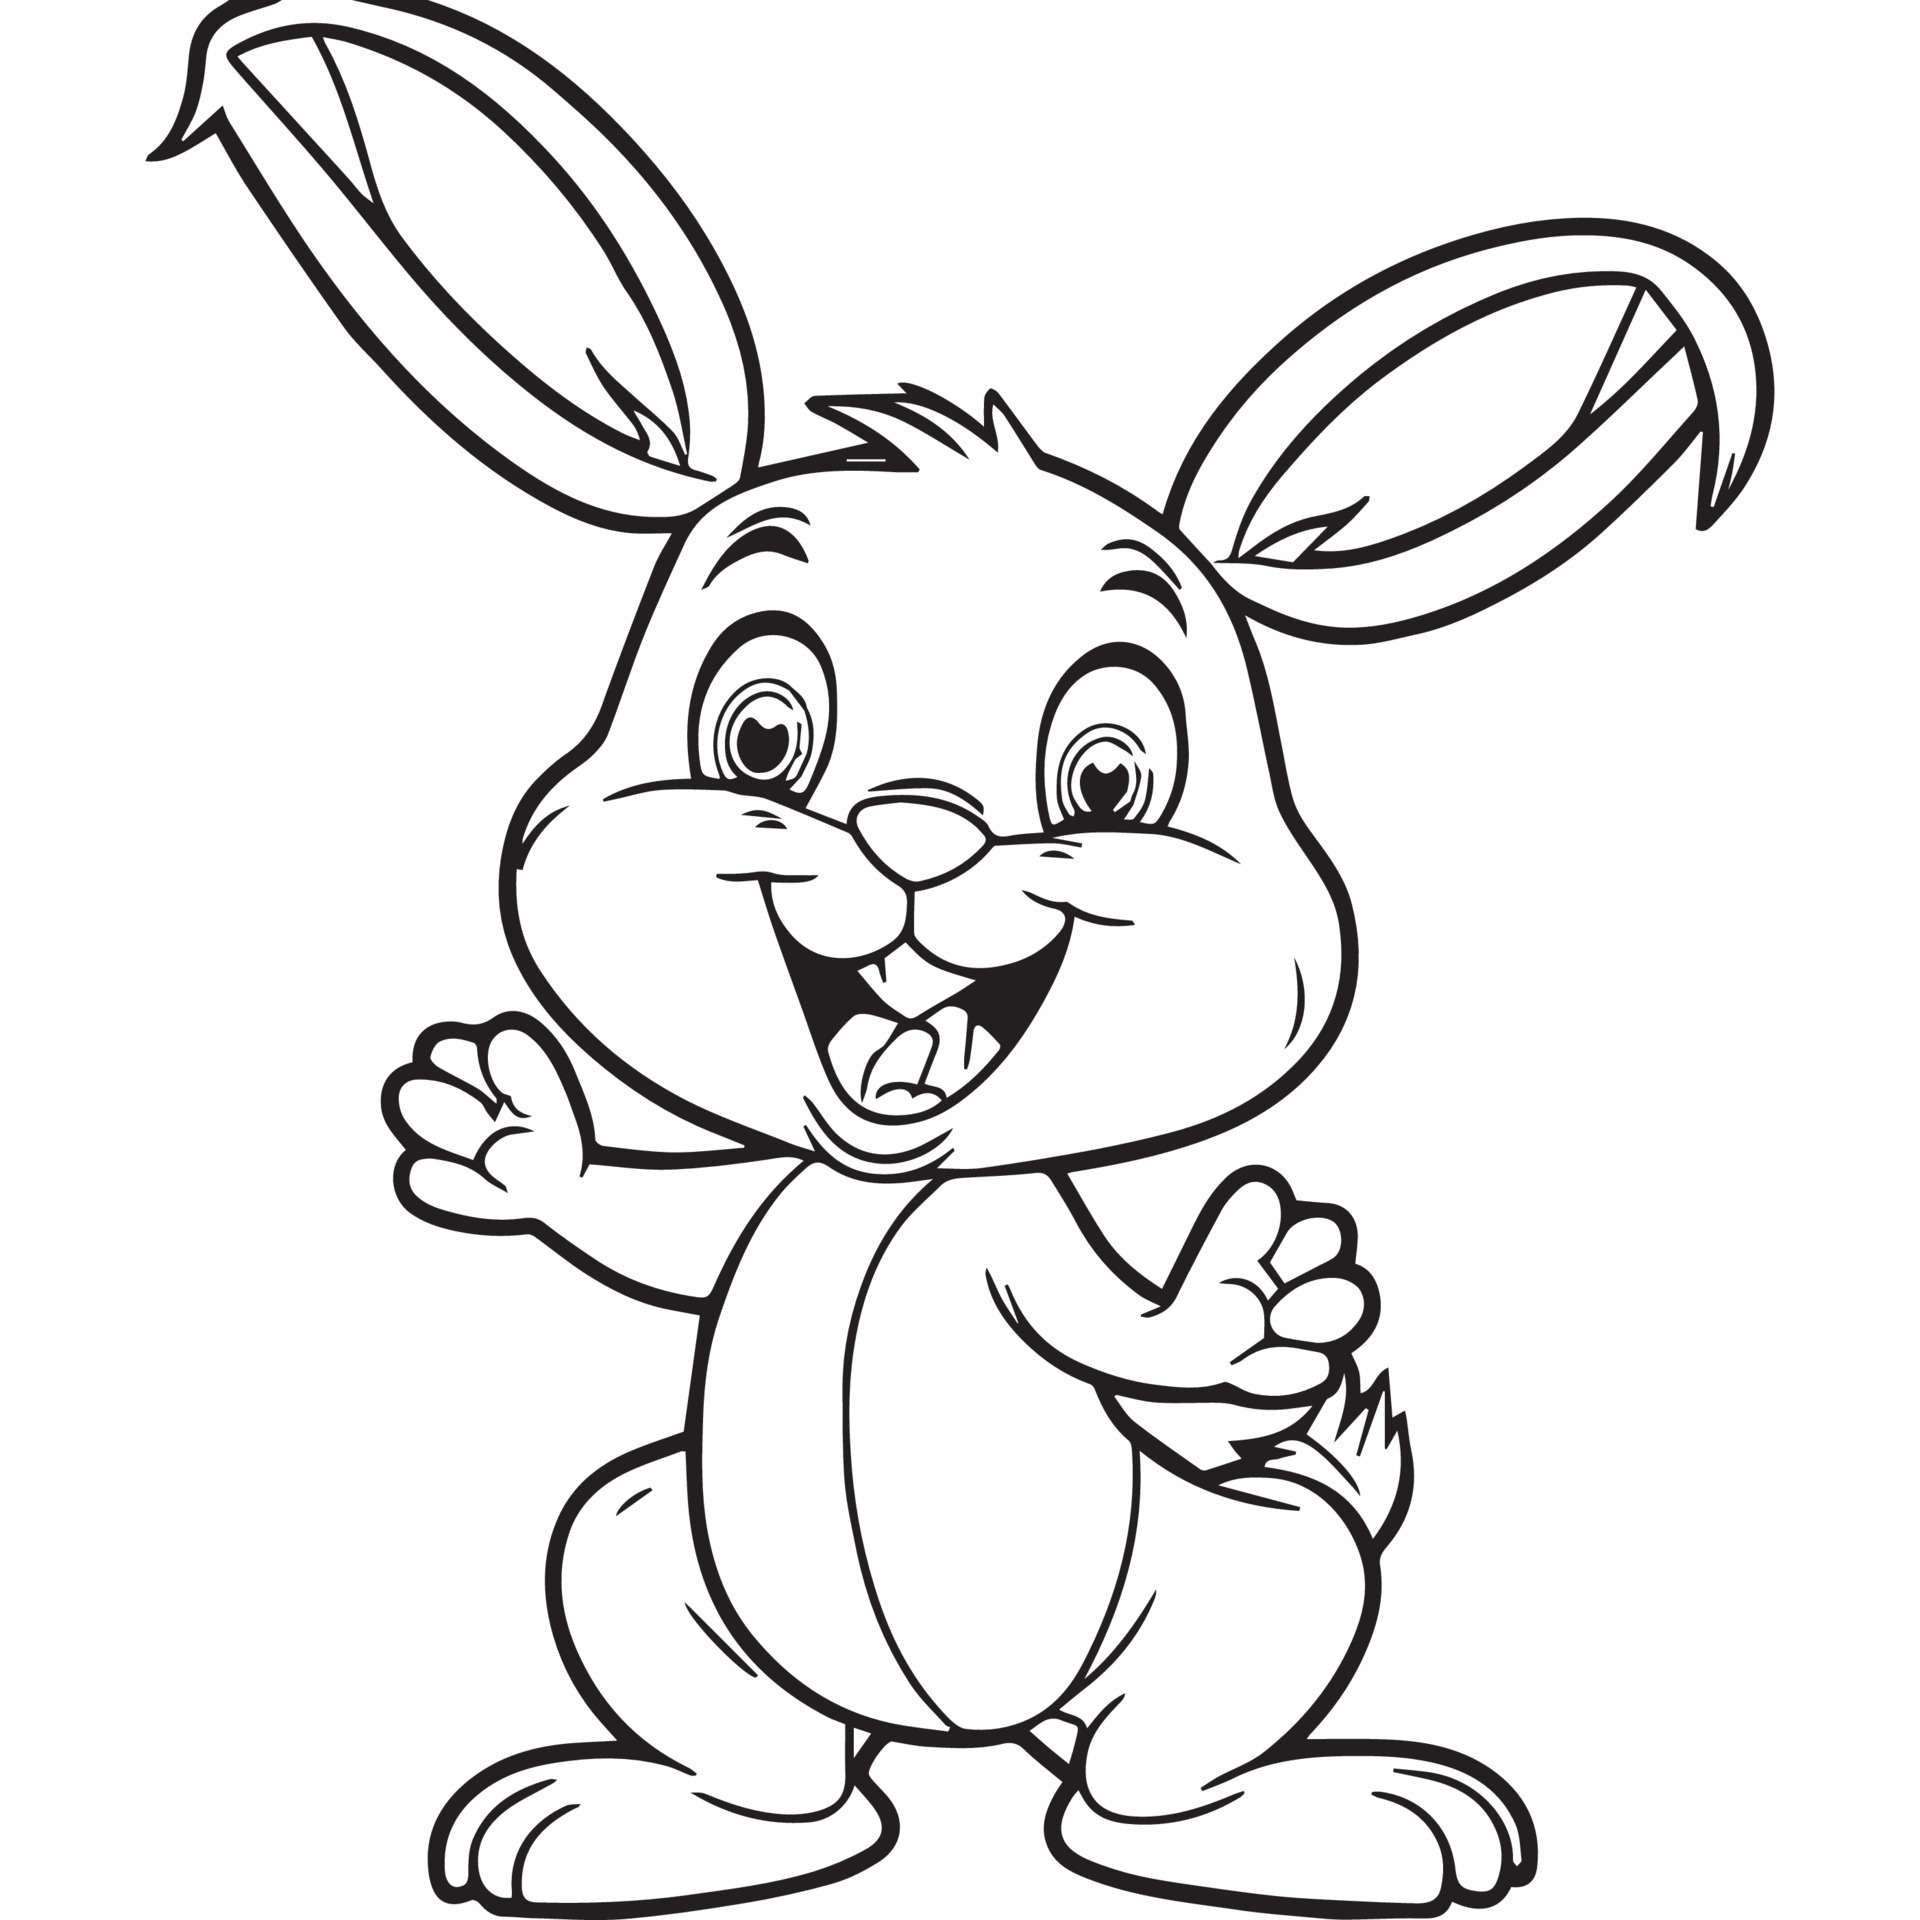 imprimir livro de colorir de coelho de desenho animado bonito para